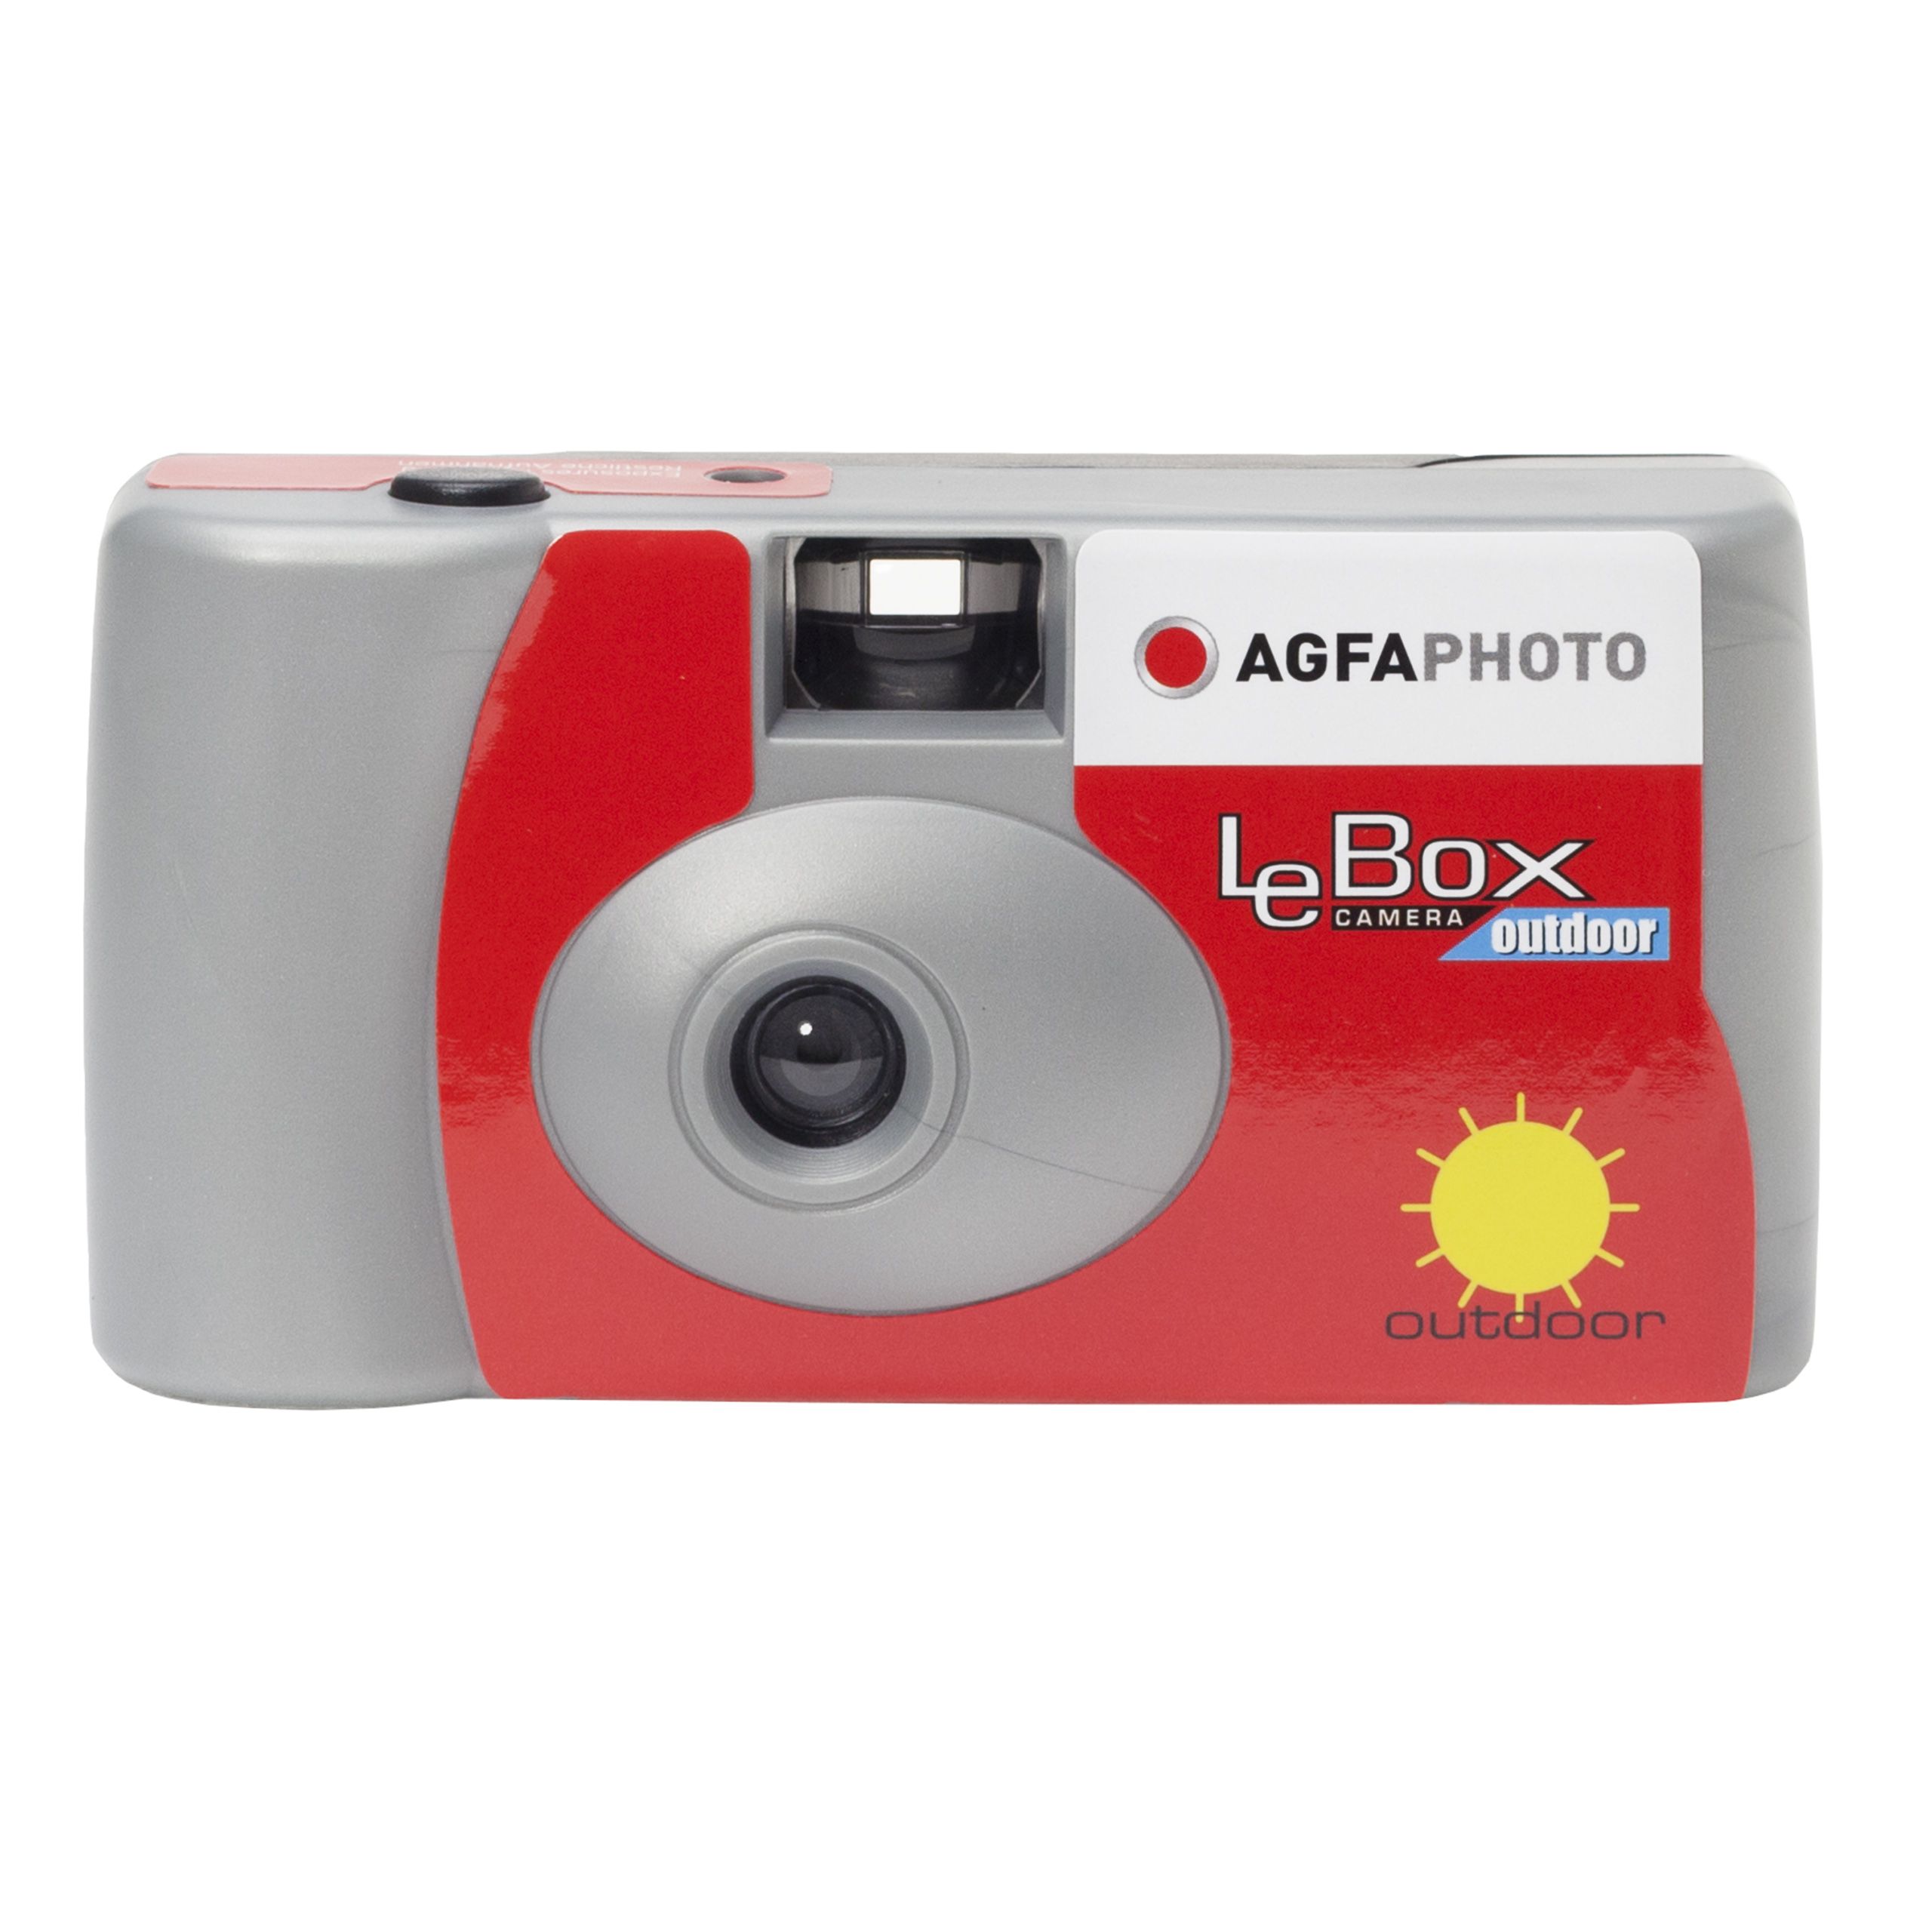 Agfa LeBox cámara desechable 27 exp. - Foto R3, film lab y fotografía  analógica